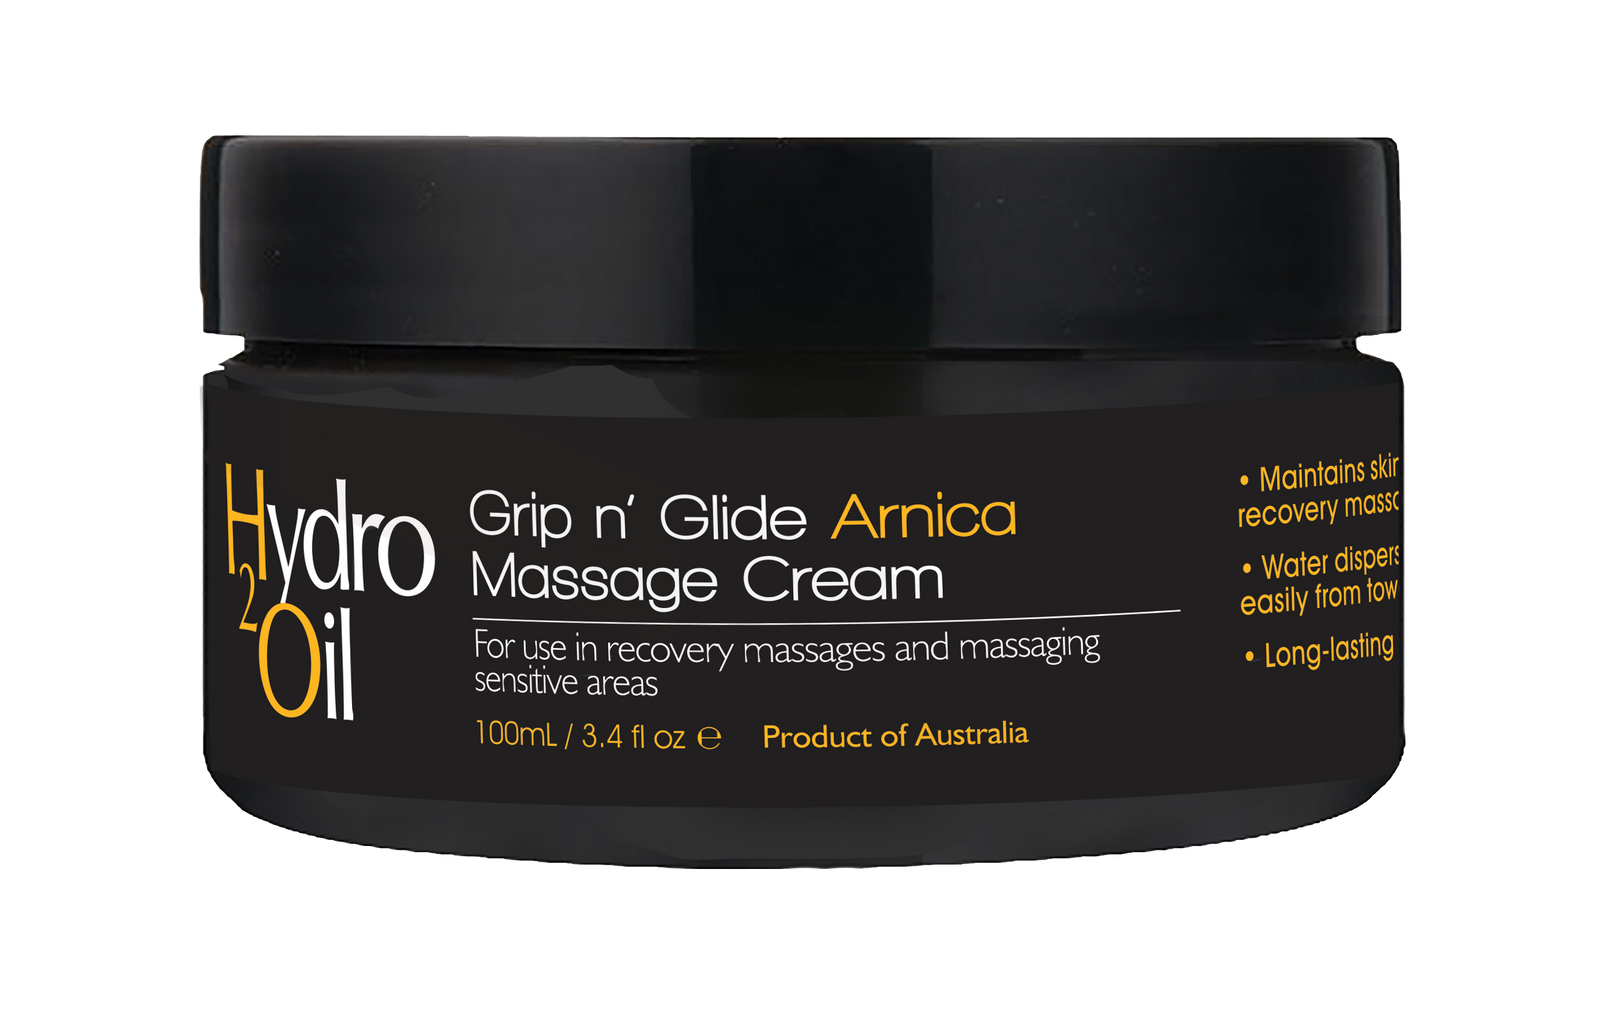 Hydro 2 Oil Massage Cream Arnica 100ml